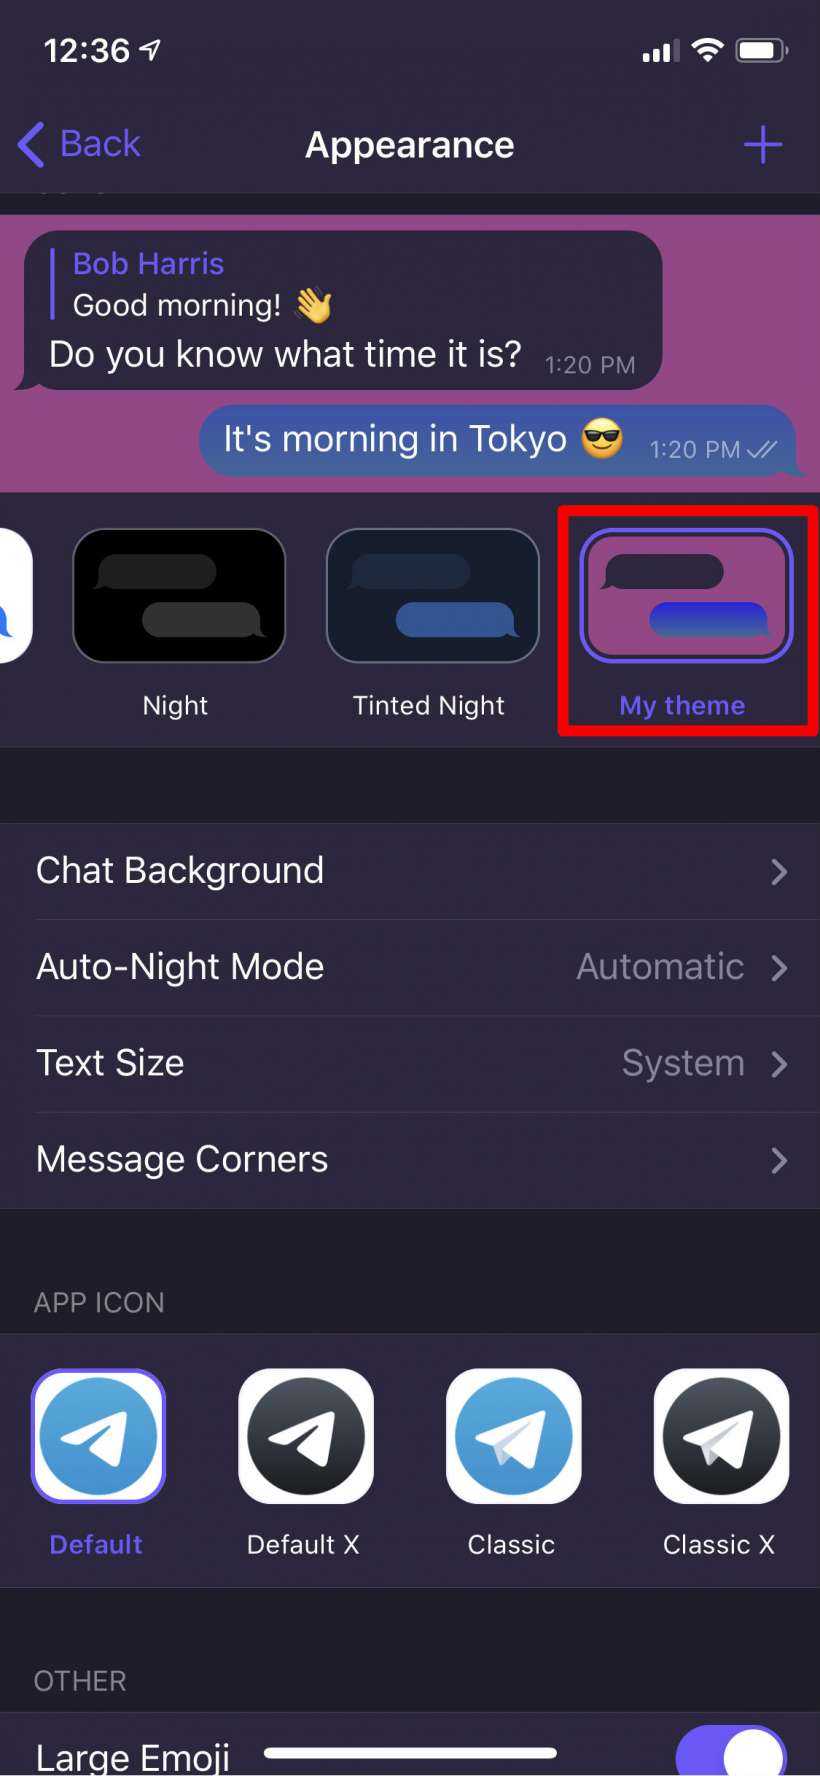 Cara membuat tema khusus untuk Telegram di iPhone dan iPad.